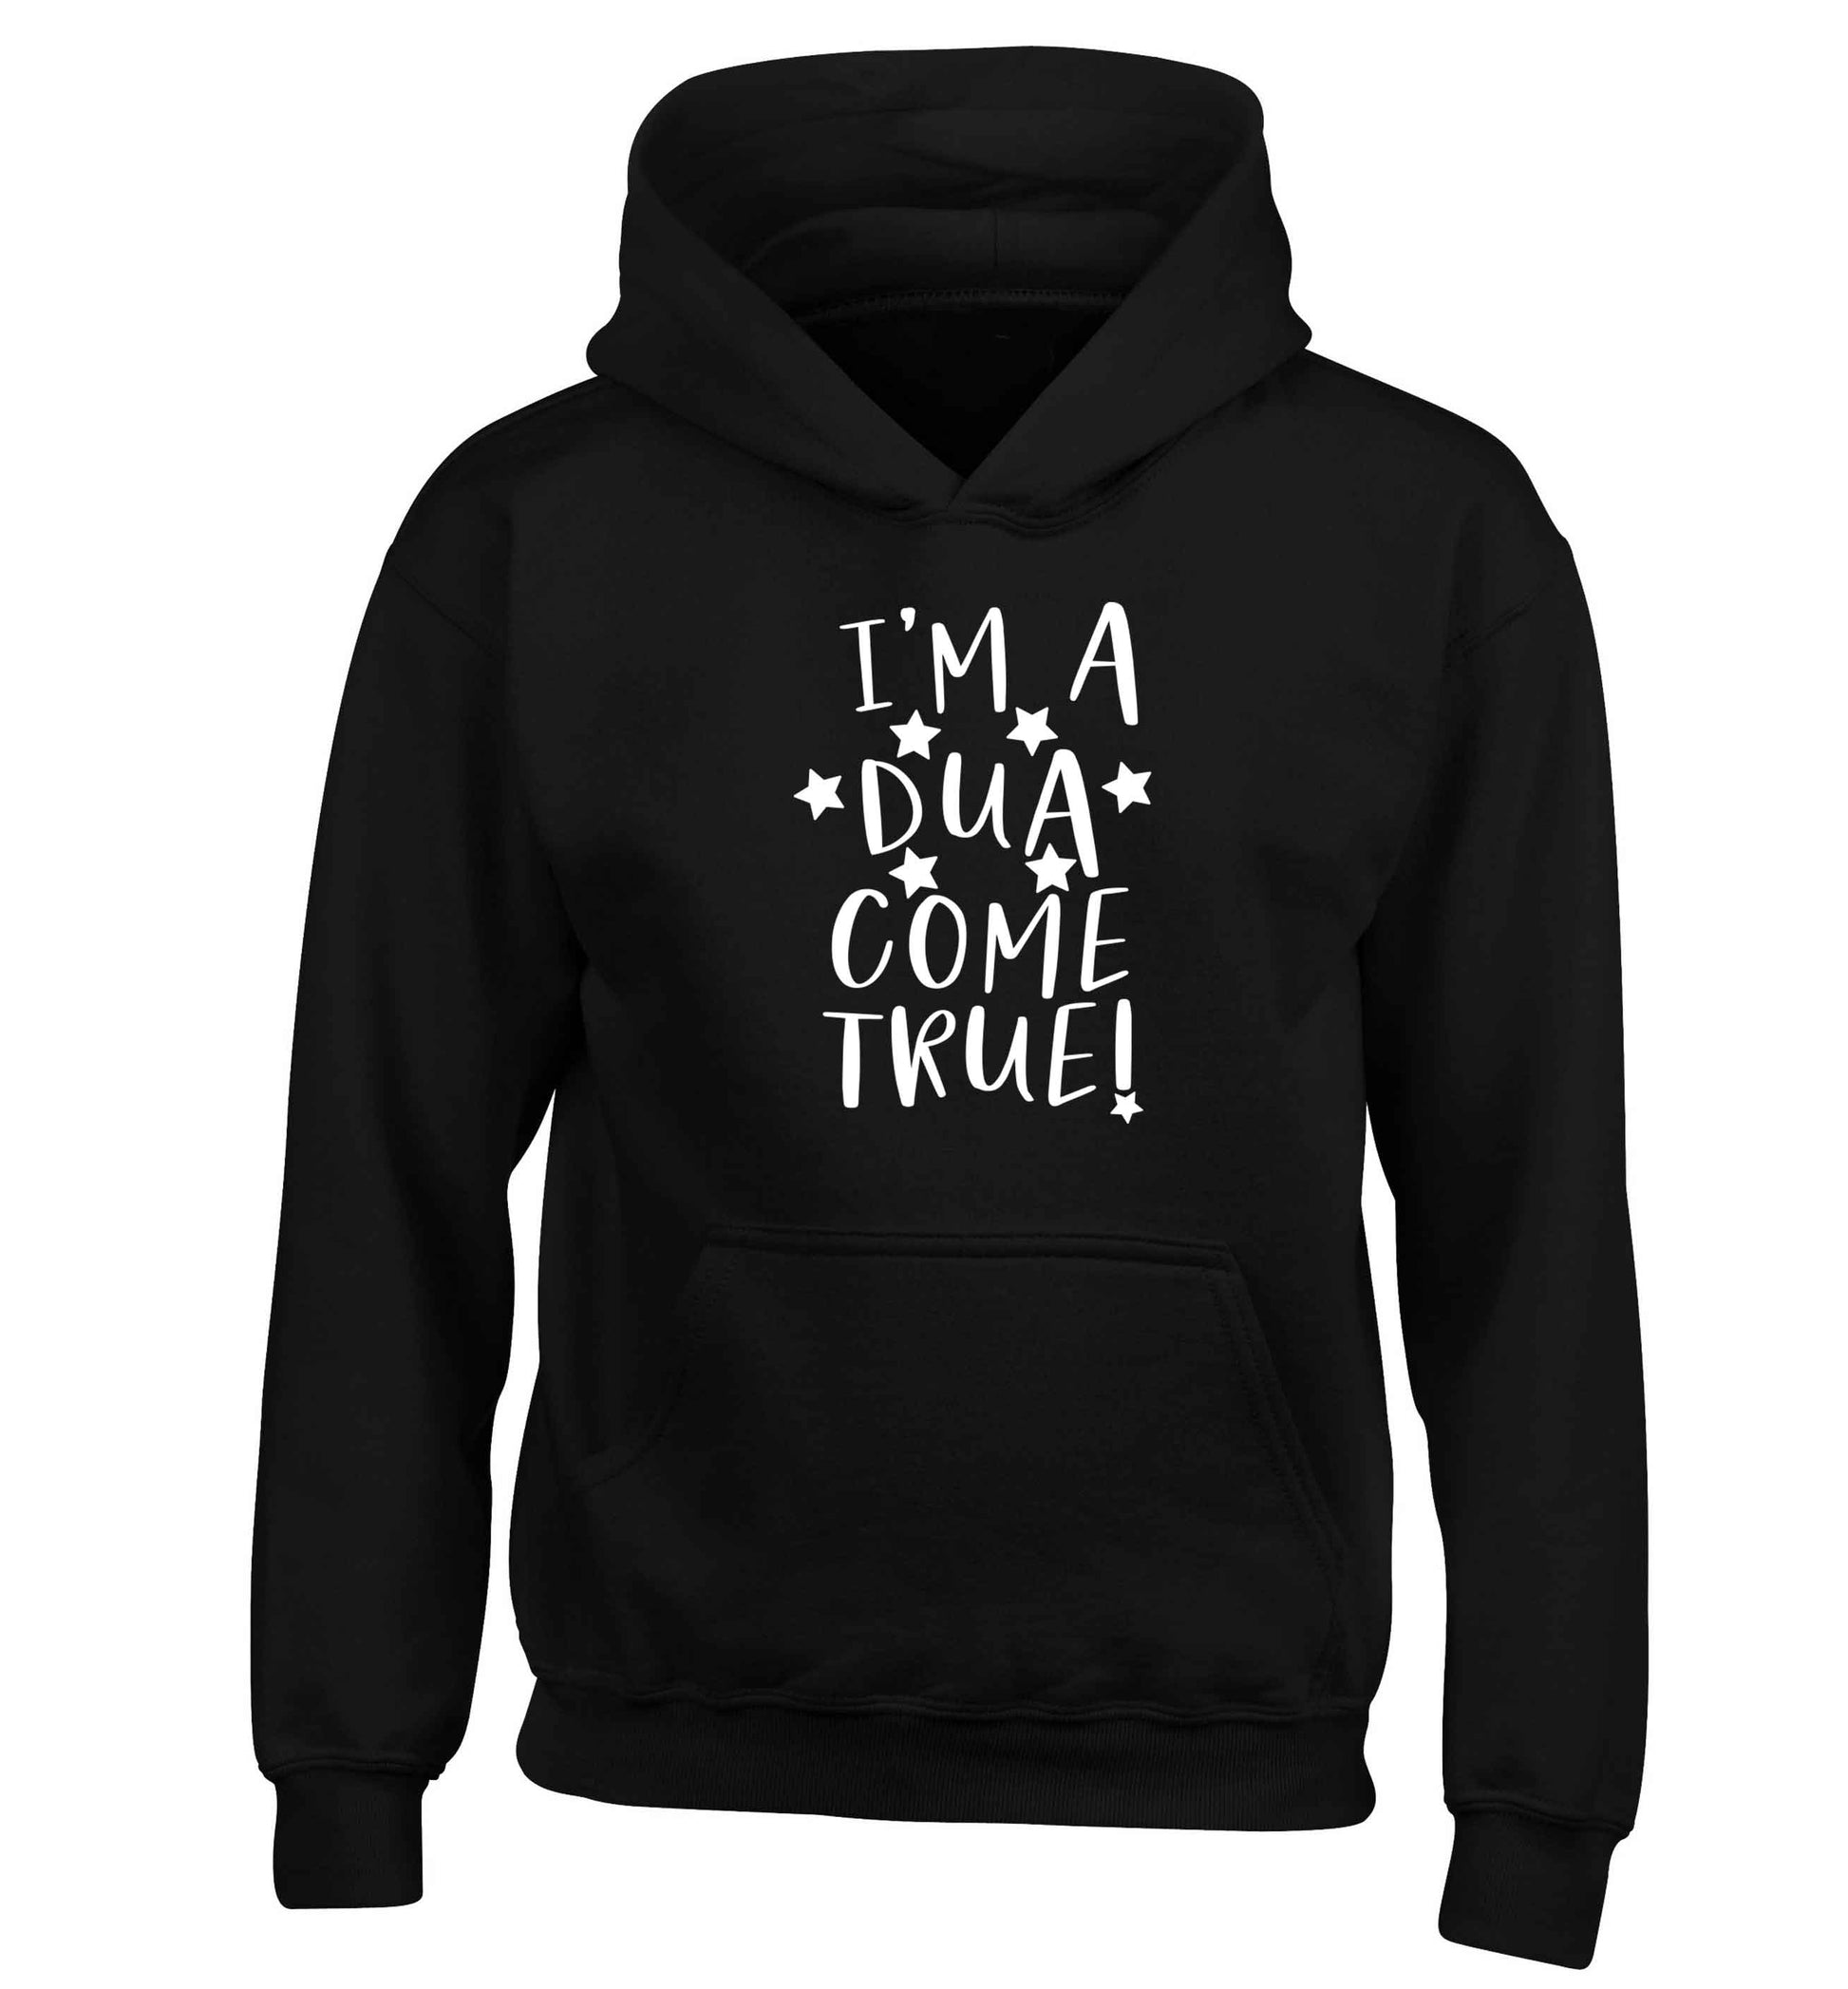 I'm a dua come true children's black hoodie 12-13 Years